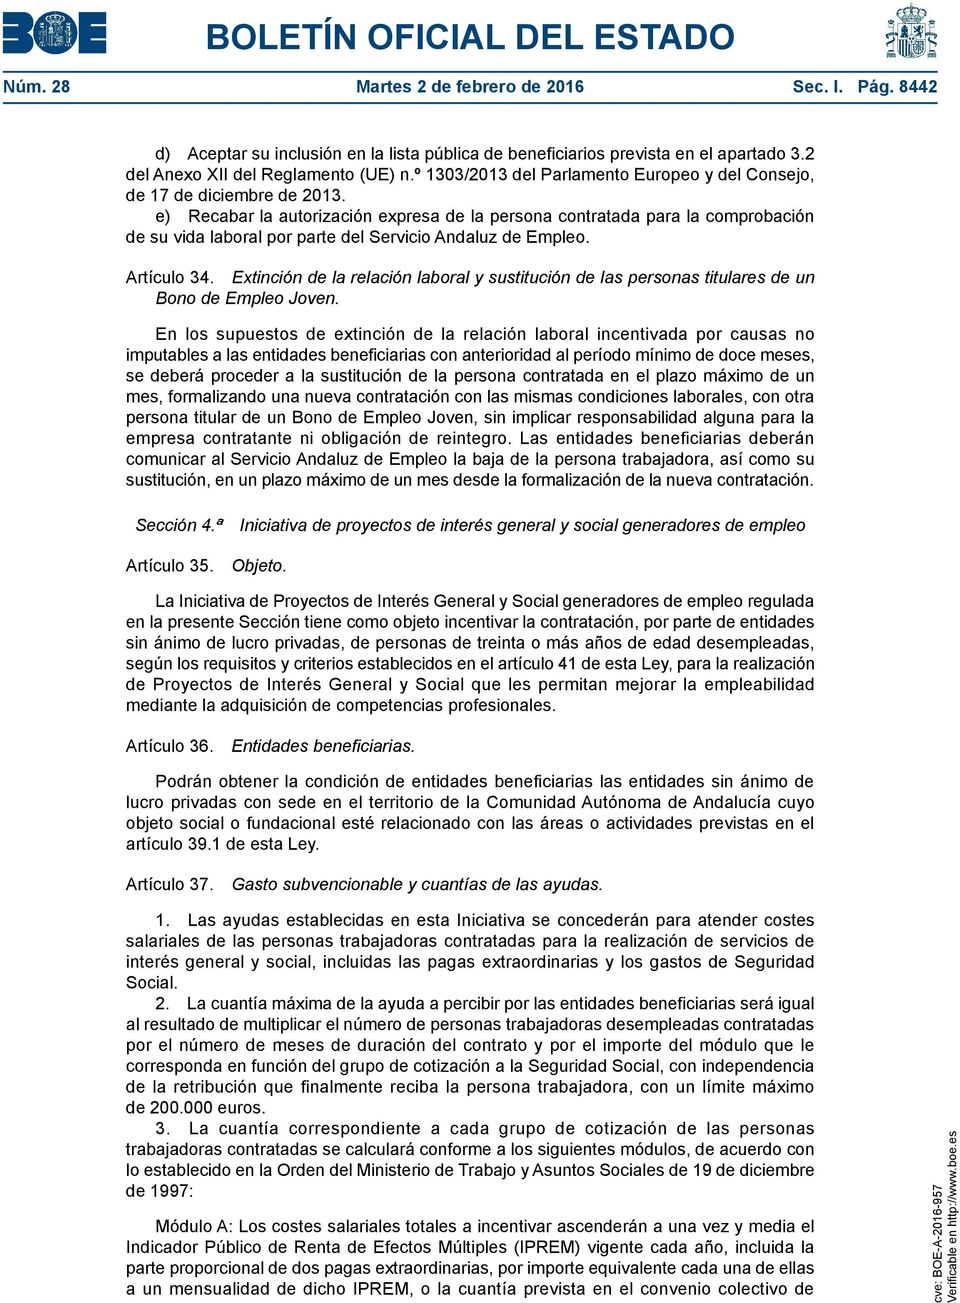 e) Recabar la autorización expresa de la persona contratada para la comprobación de su vida laboral por parte del Servicio Andaluz de Empleo. Artículo 34.